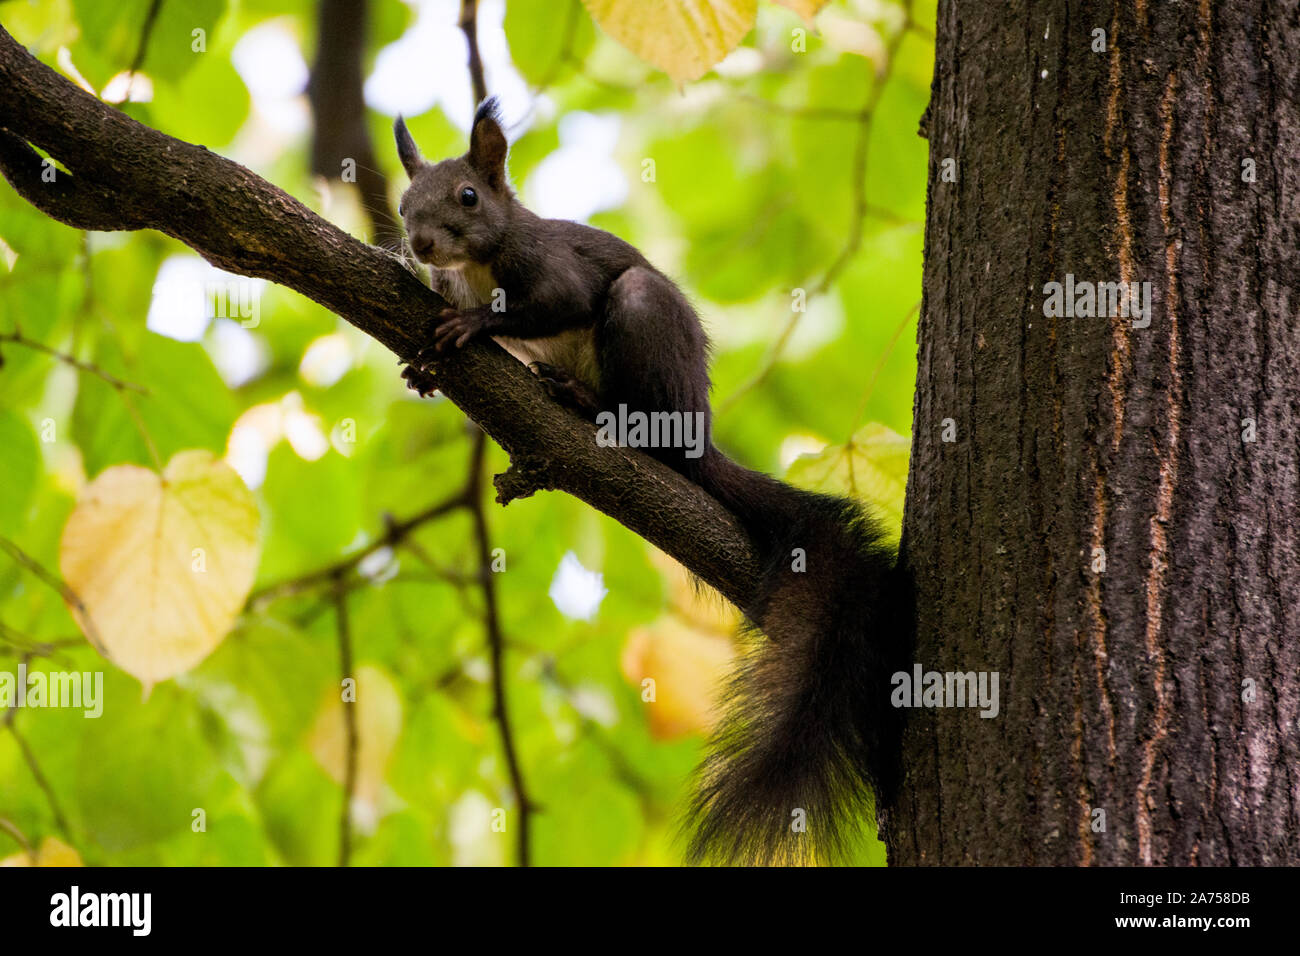 Ein park Eichhörnchen sitzt auf einem Ast; eine agile Baum - Wohnung Nagetier mit buschigem Schwanz, in der Regel Fütterung auf Nüsse und Samen. Stockfoto